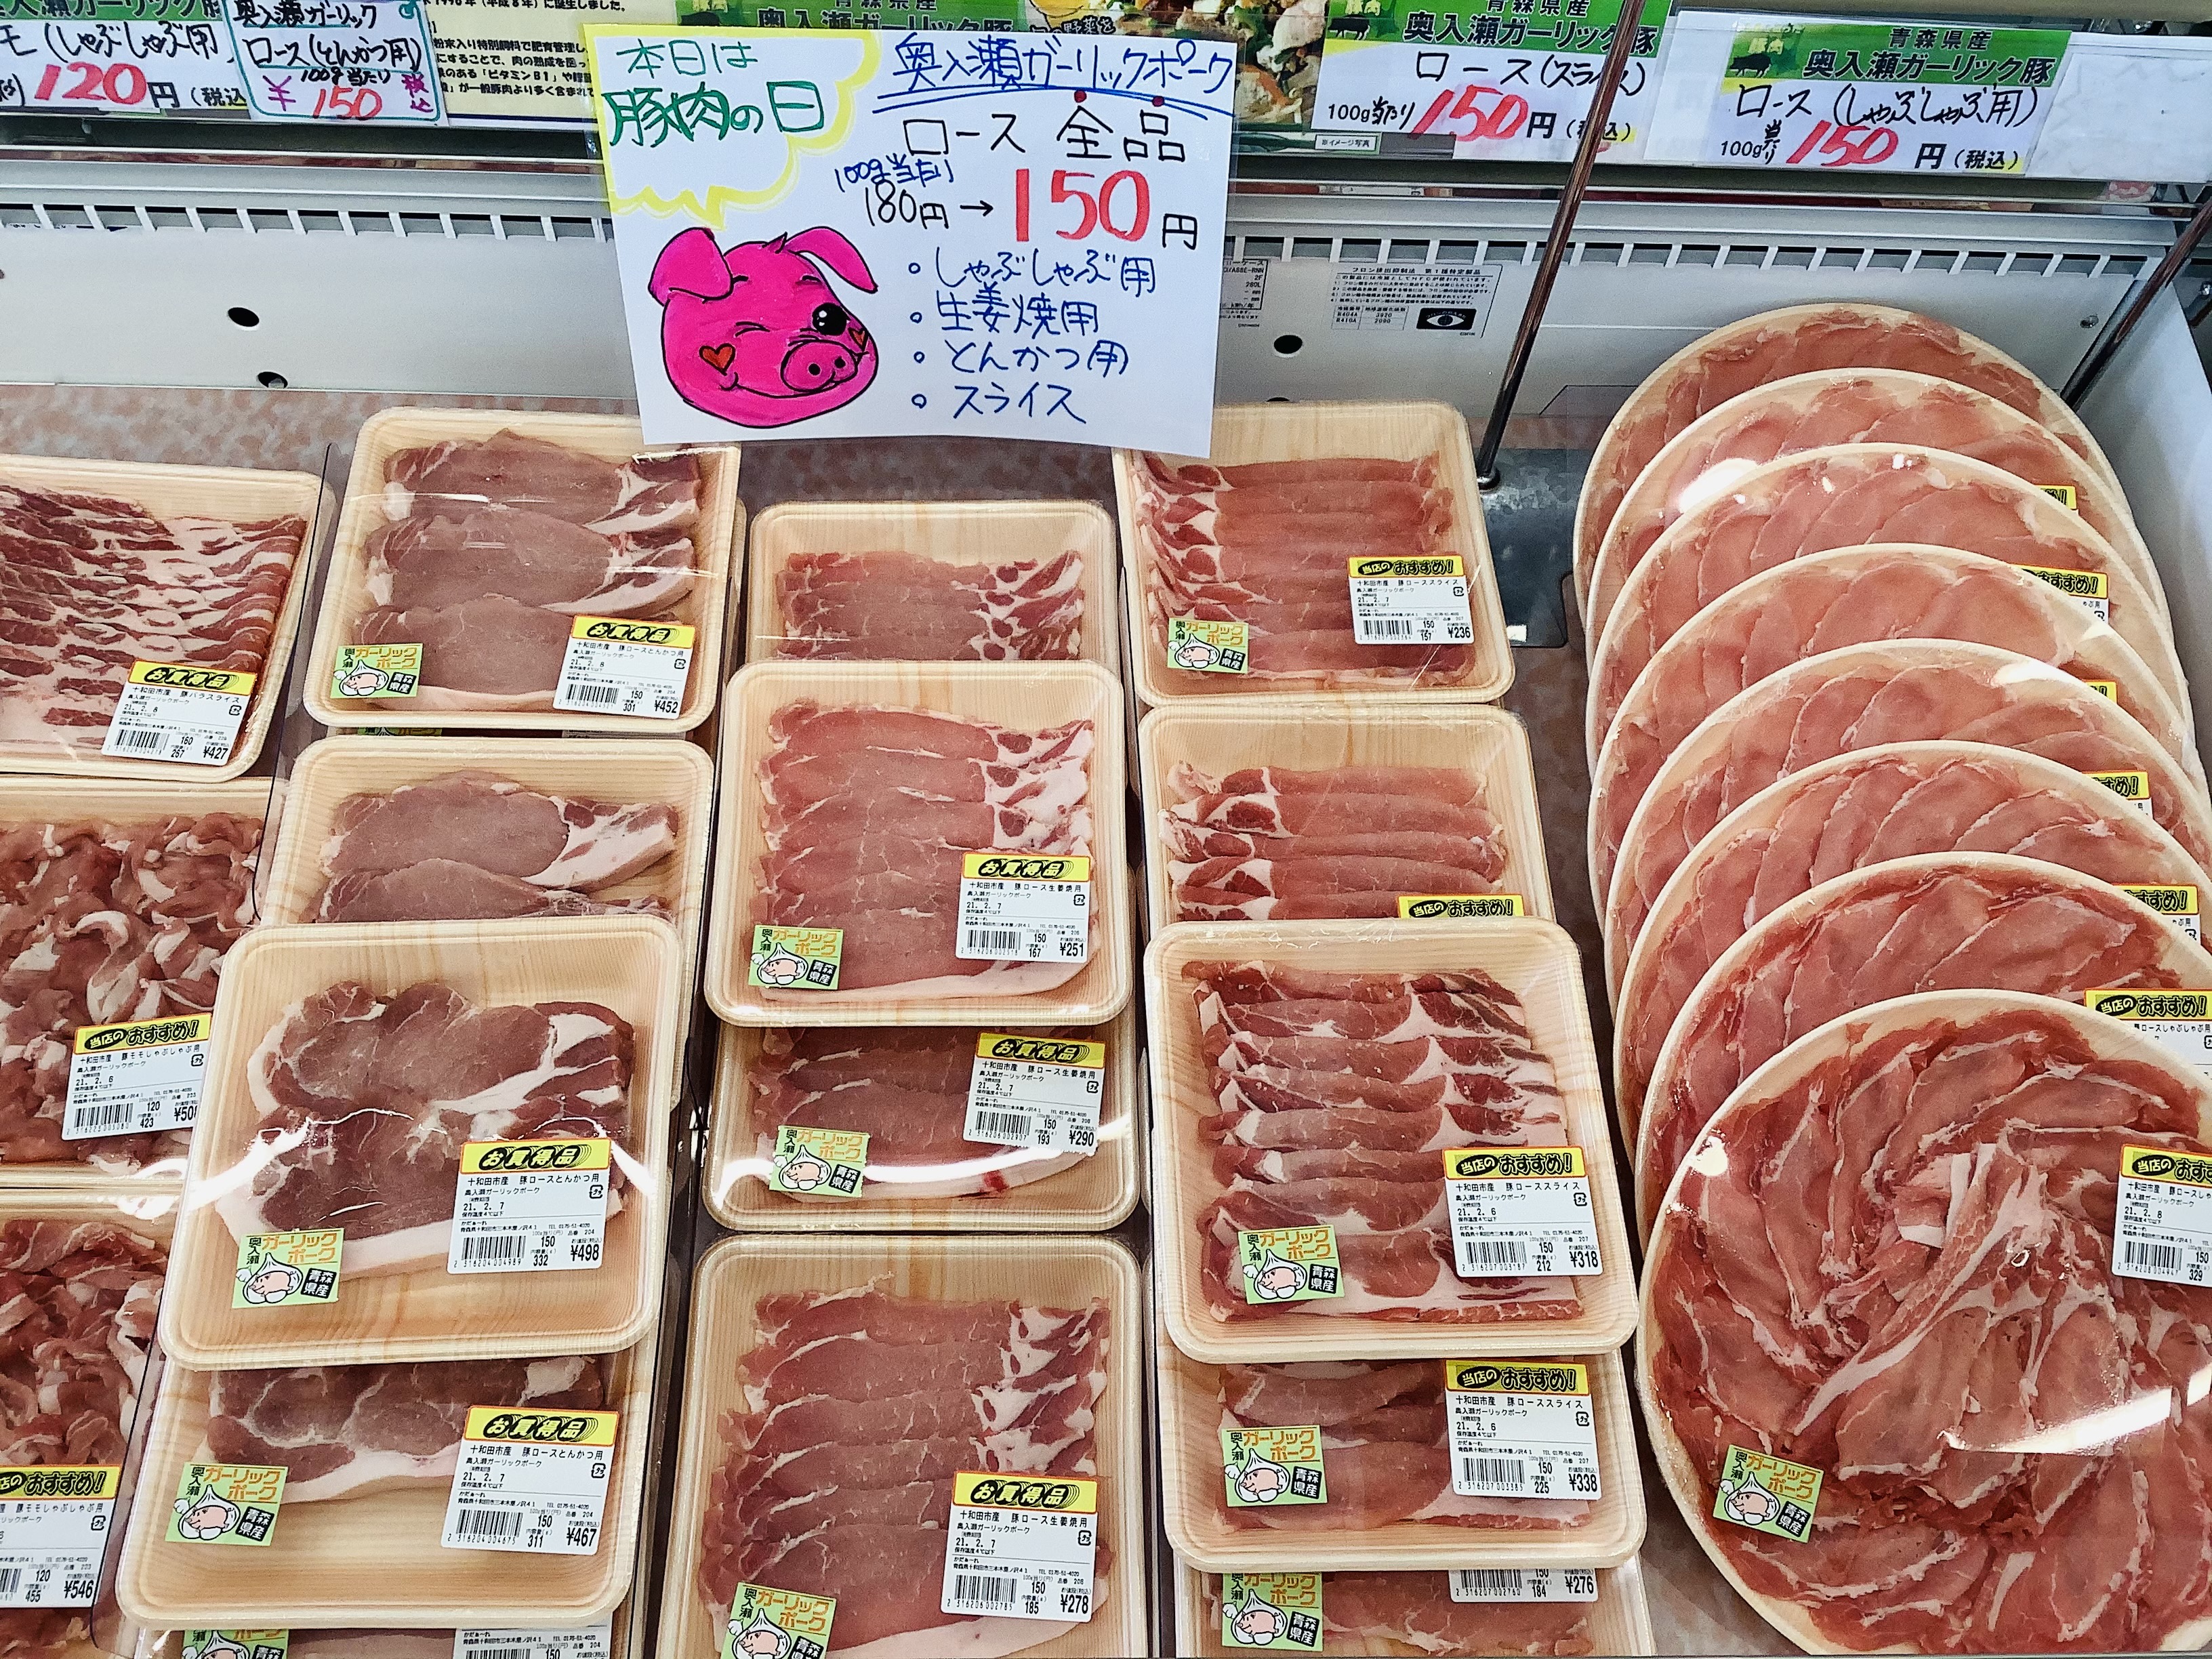 十和田市名産の馬肉などの約50種類のお肉が週替わりでお買い得に販売